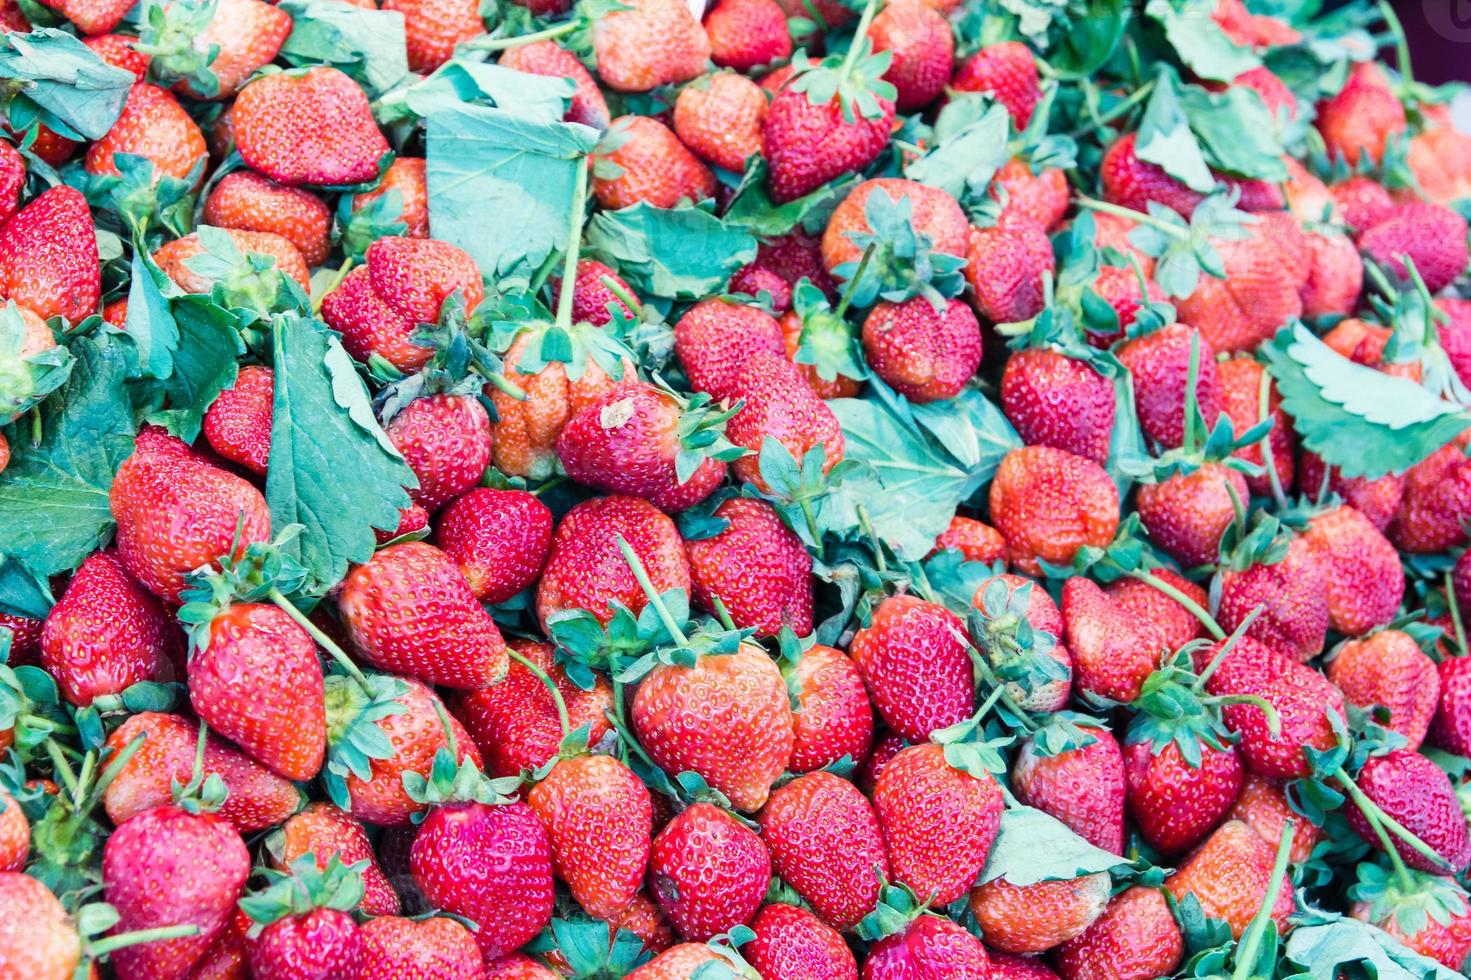 hoop rode aardbeien in markt foto